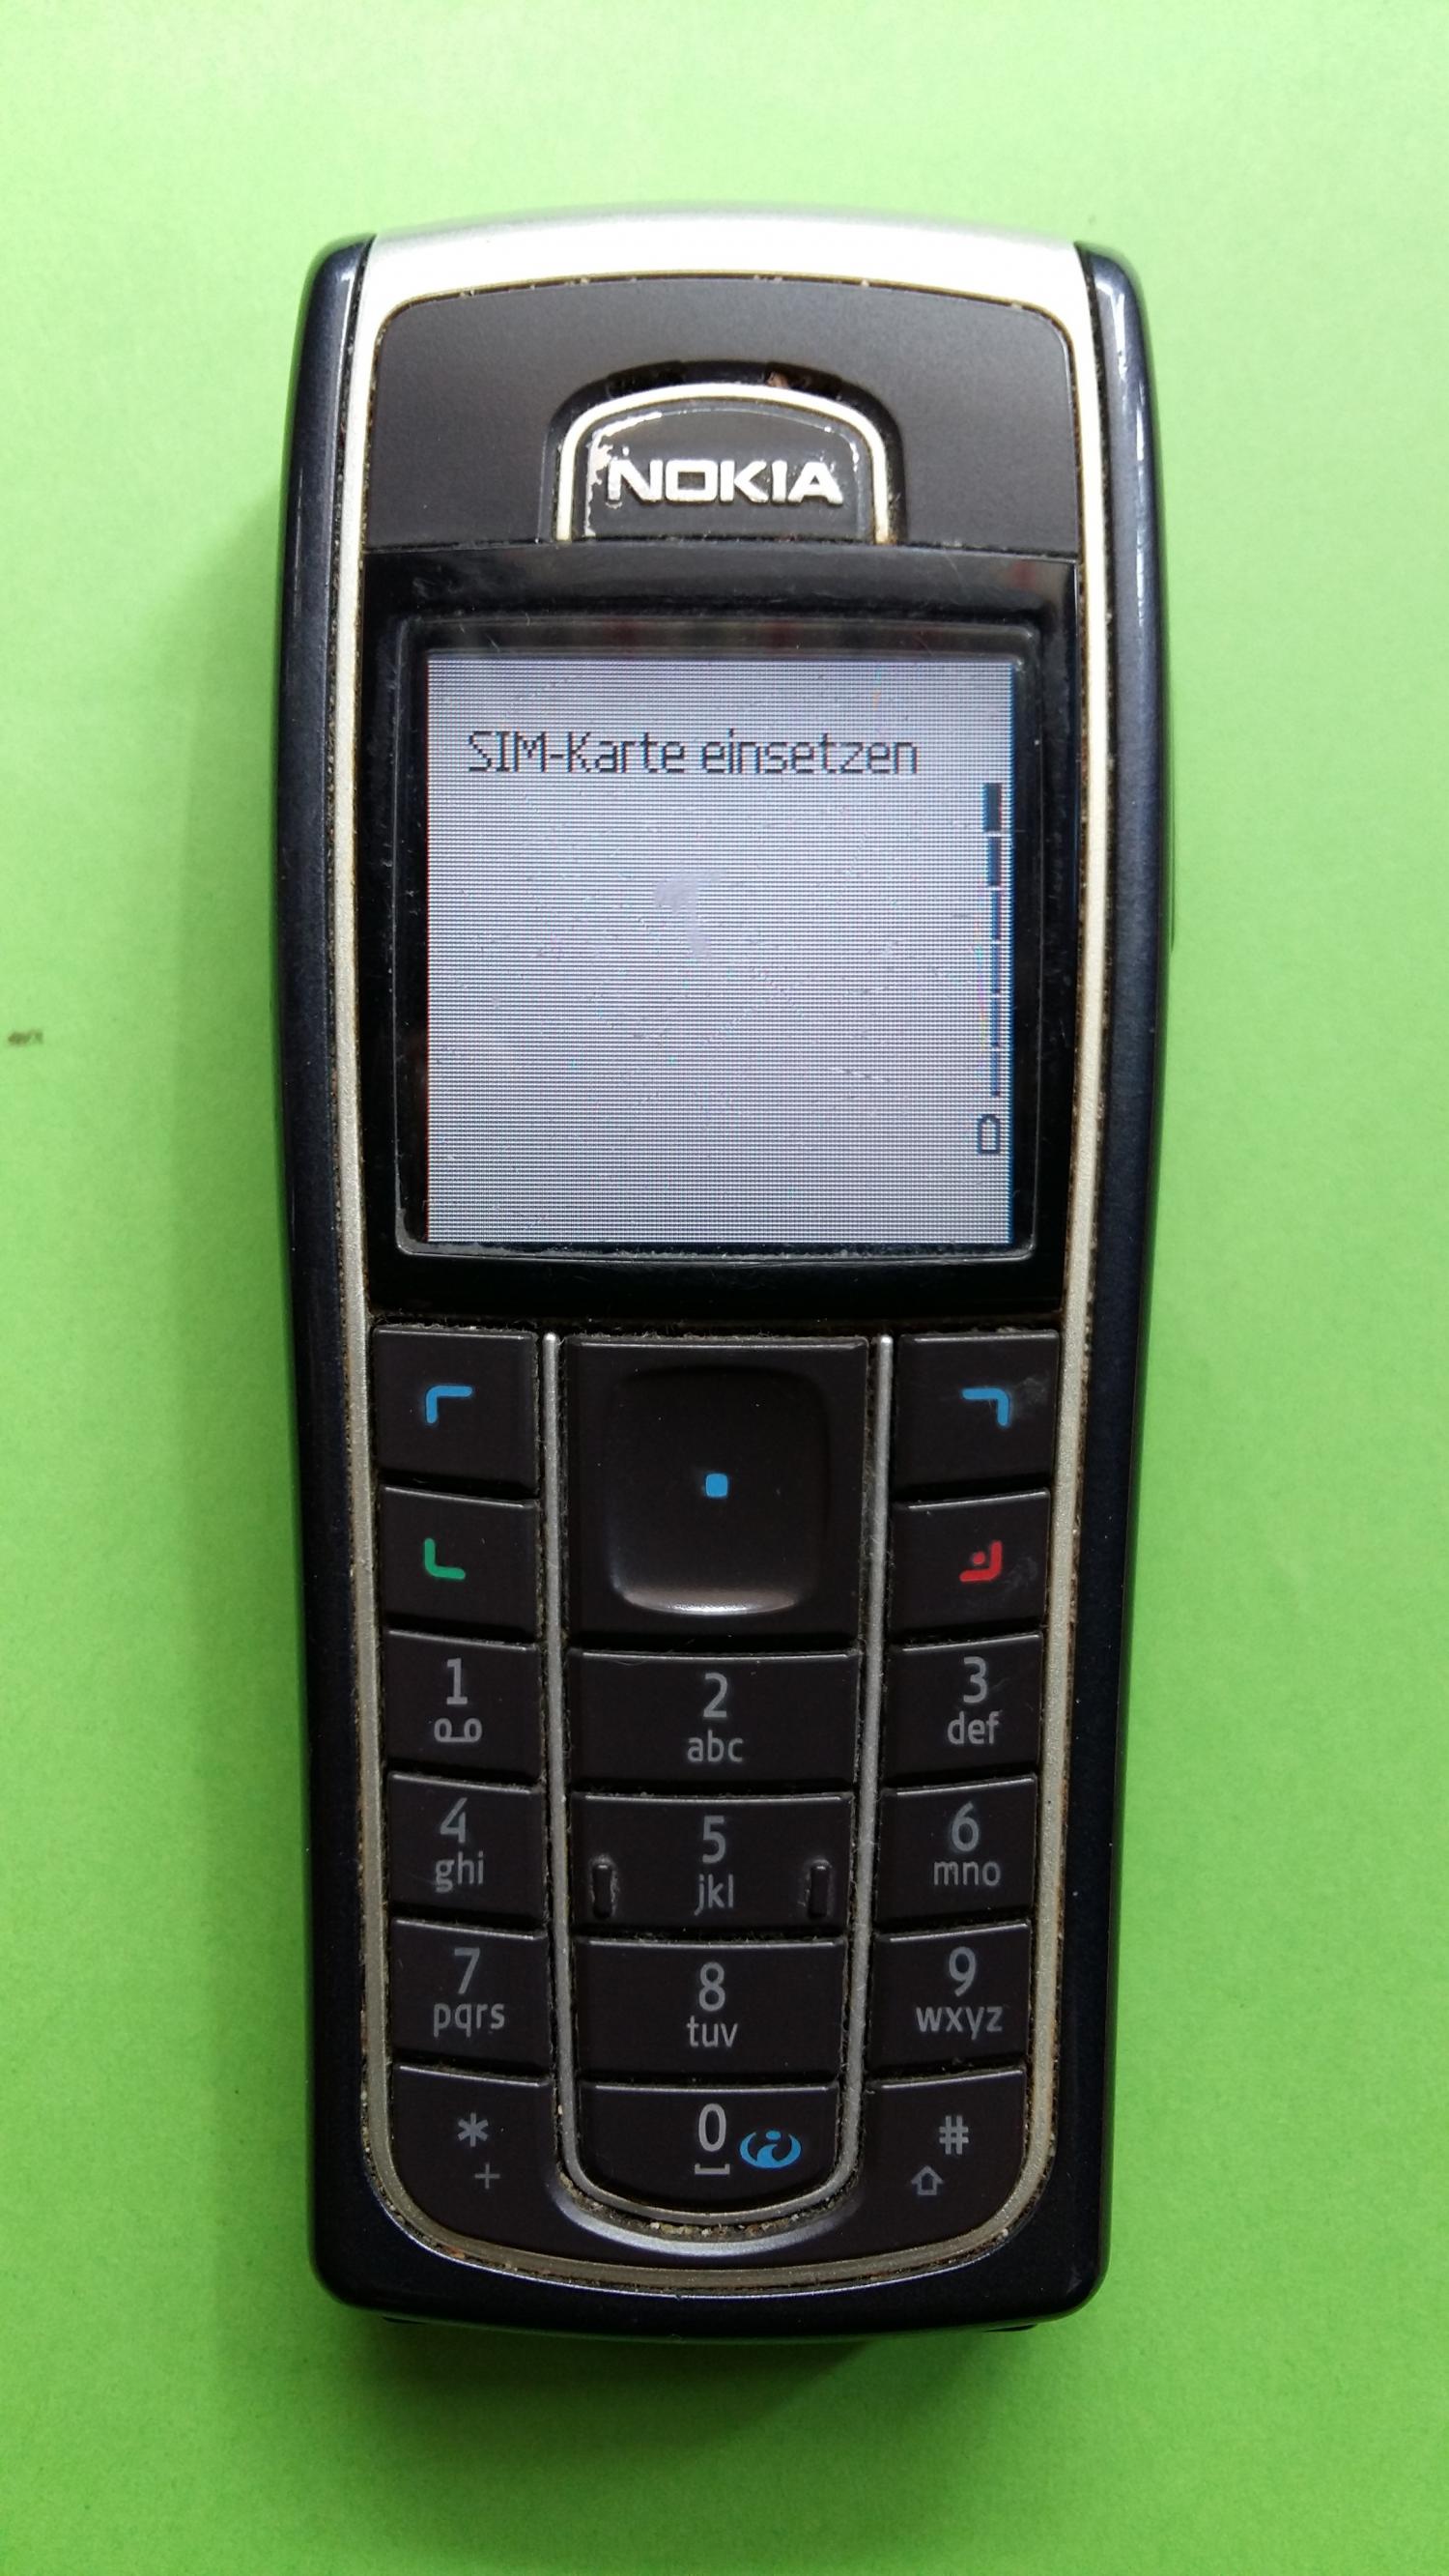 image-7318826-Nokia 6230 (2)1.jpg